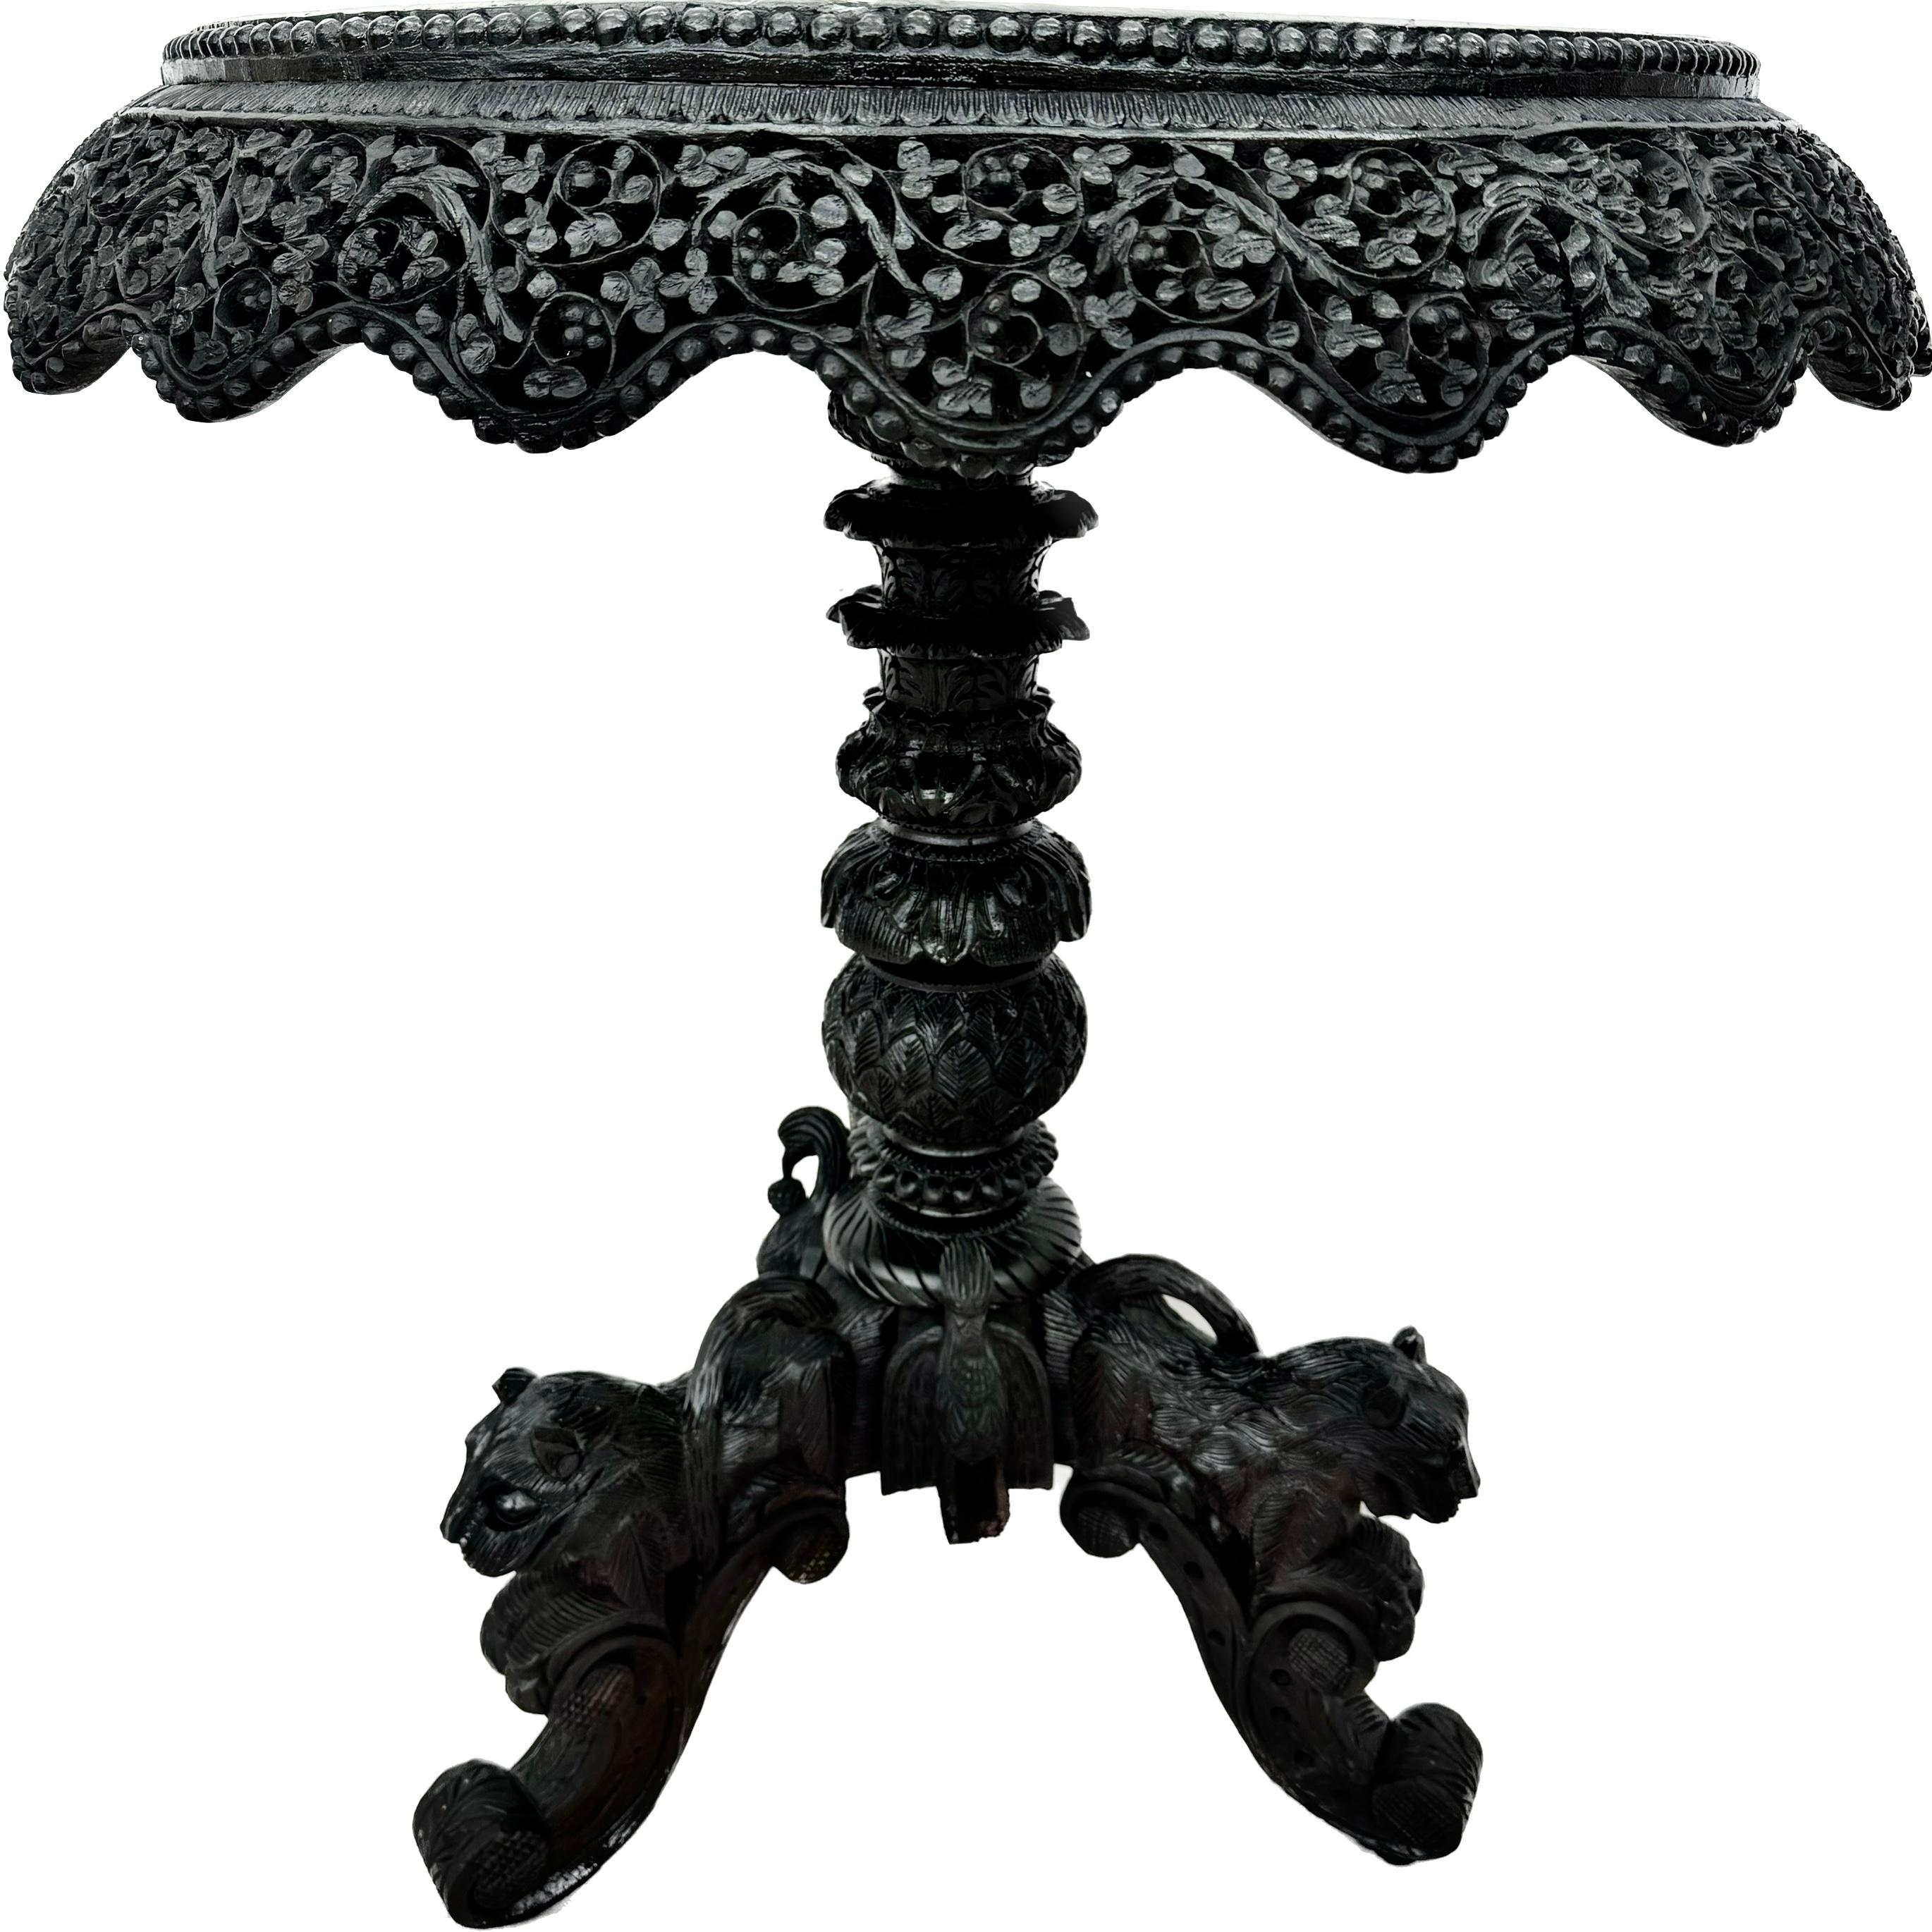 Exquise table d'appoint ronde anglo-indienne birmane sculptée du 19e siècle. La table est dotée d'un tablier filigrané et sculpté de façon complexe et d'une base sur piédestal. La base est ornée de têtes de tigre sculptées sur des pieds tripodes. 